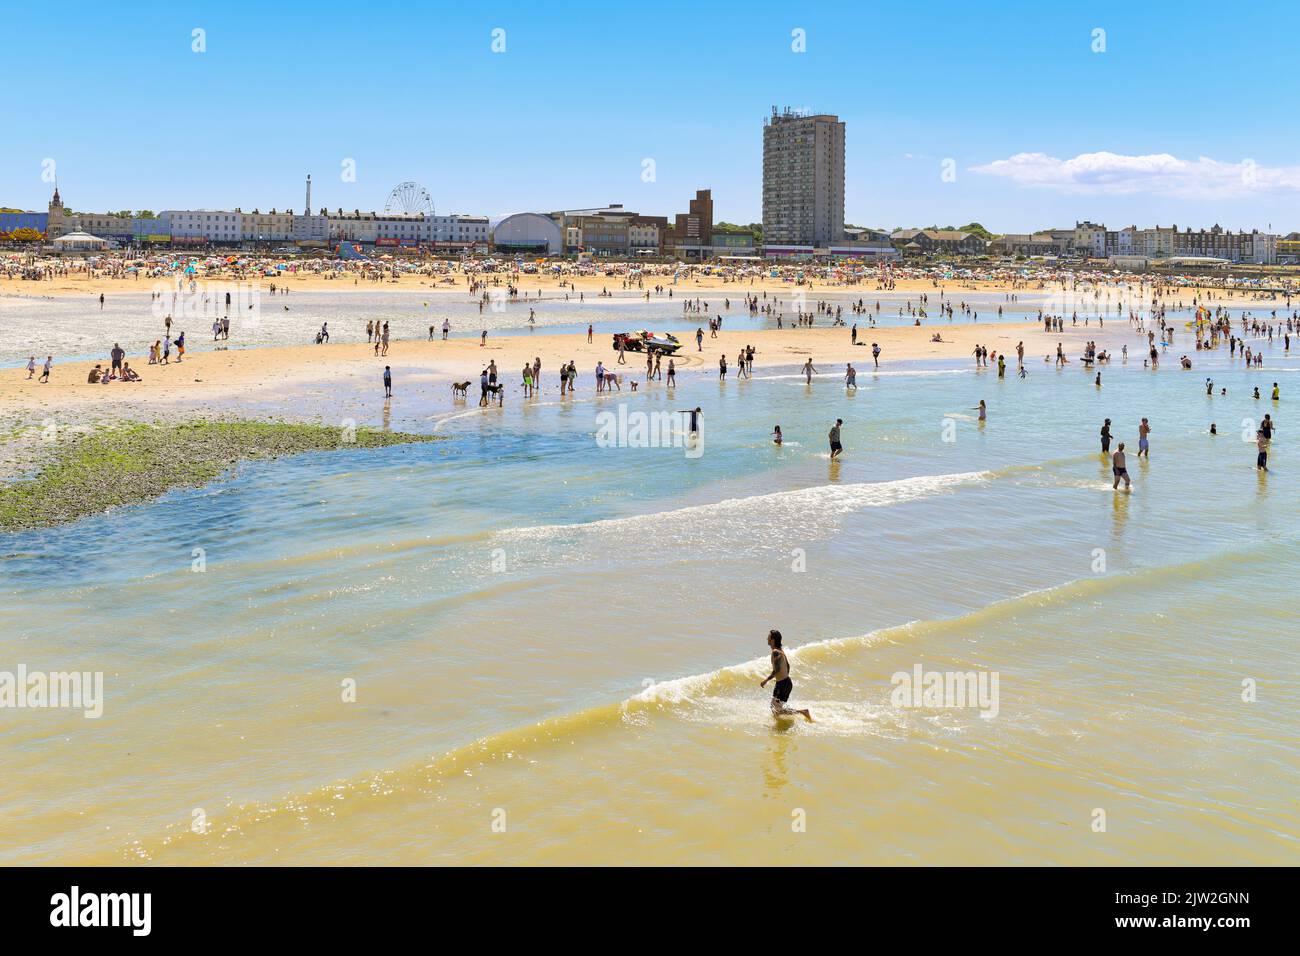 Margate beach, Margate, Kent, England, UK Stock Photo